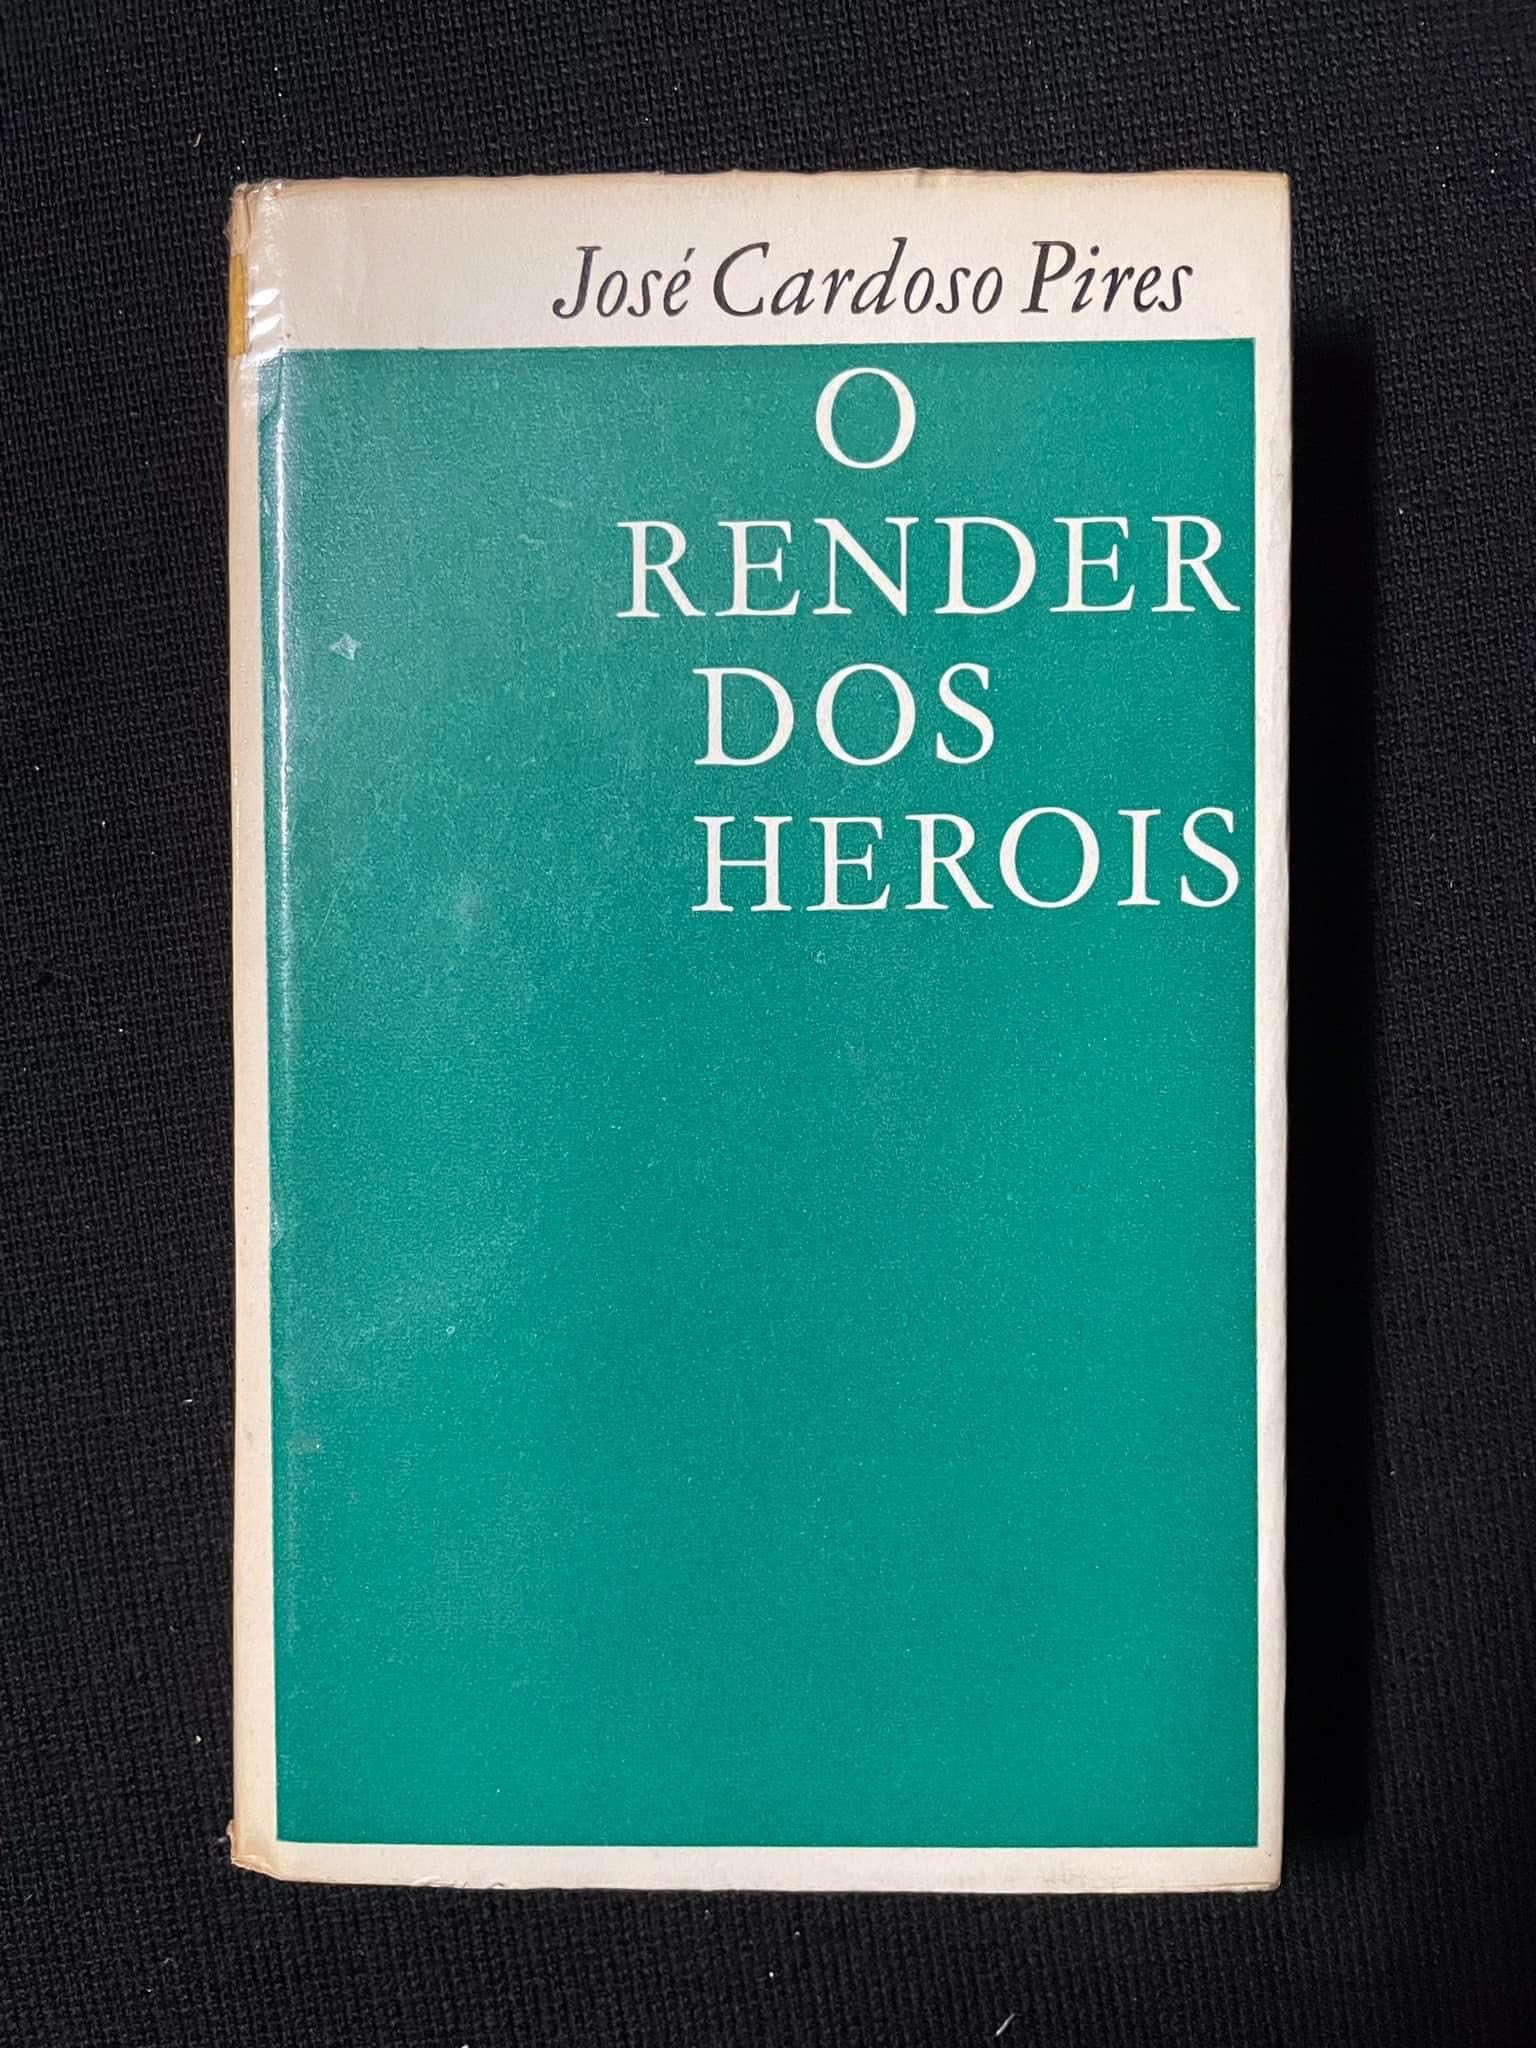 O Render dos Heróis - José Cardoso Pires (portes grátis)